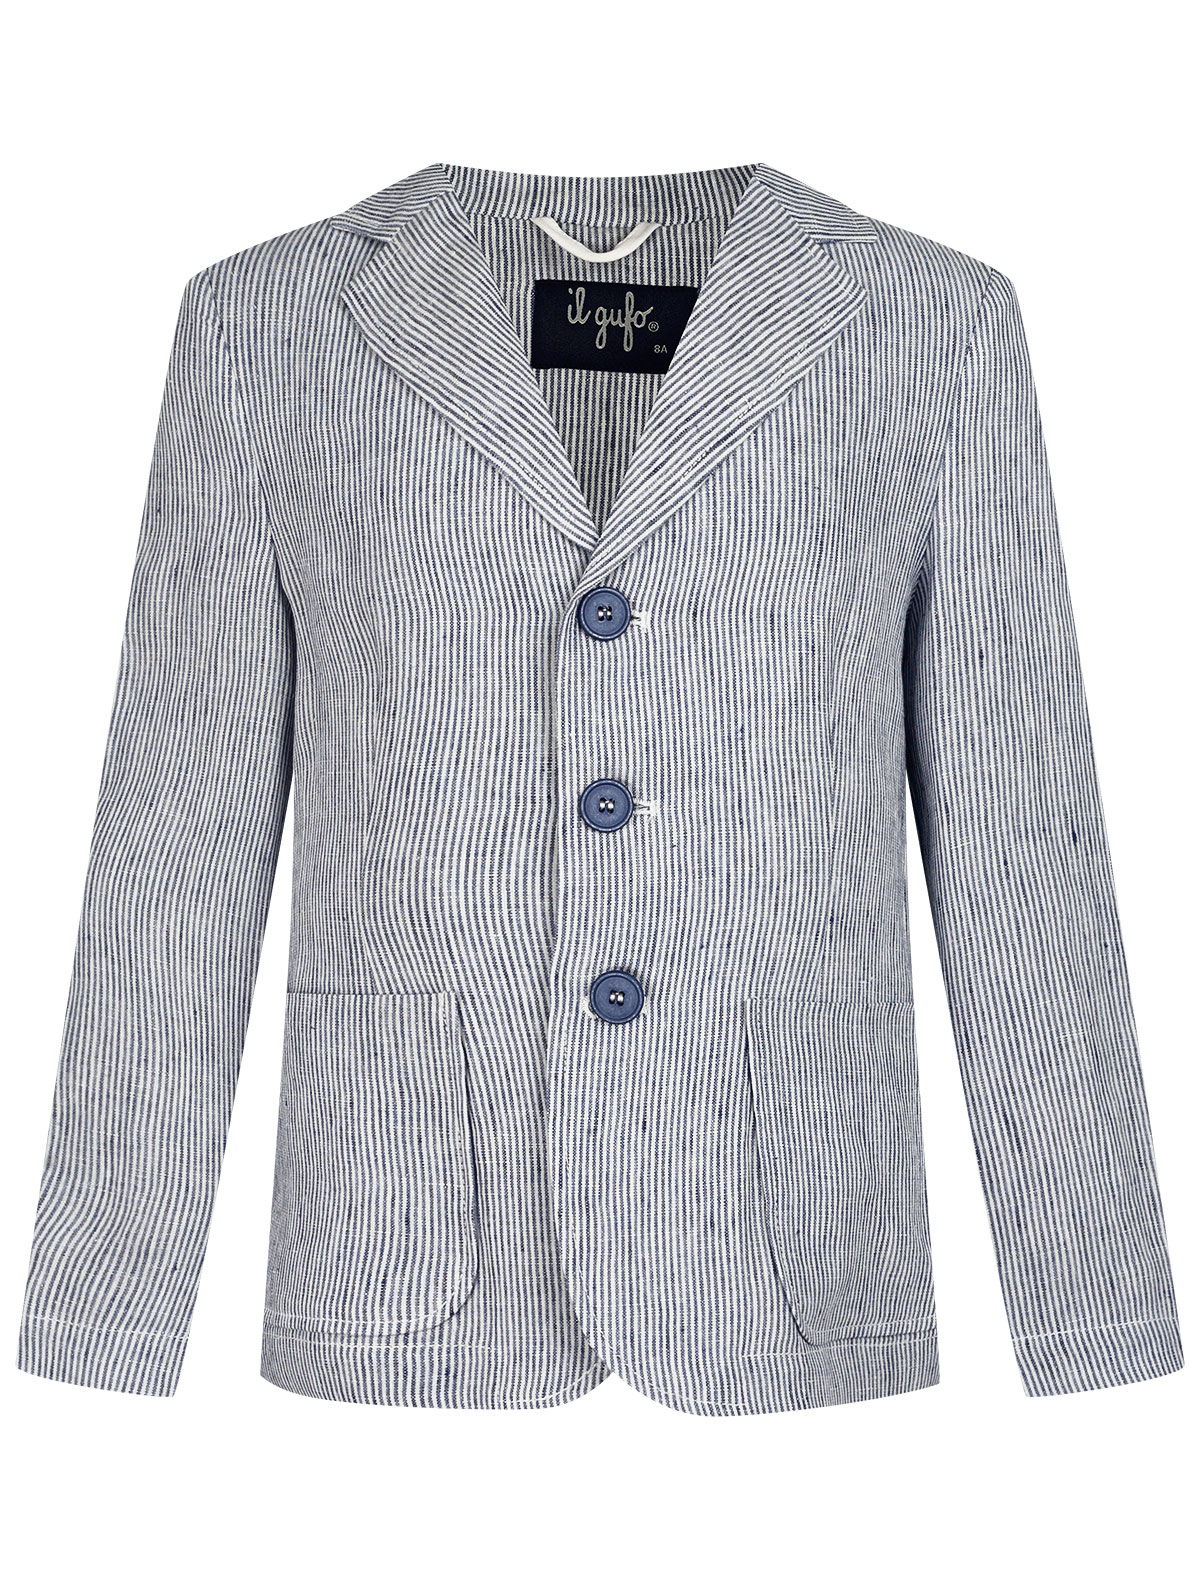 Пиджак Il Gufo пиджак двубортный на пуговицах с лацканами синий button blue teens line 164 84 69 xs